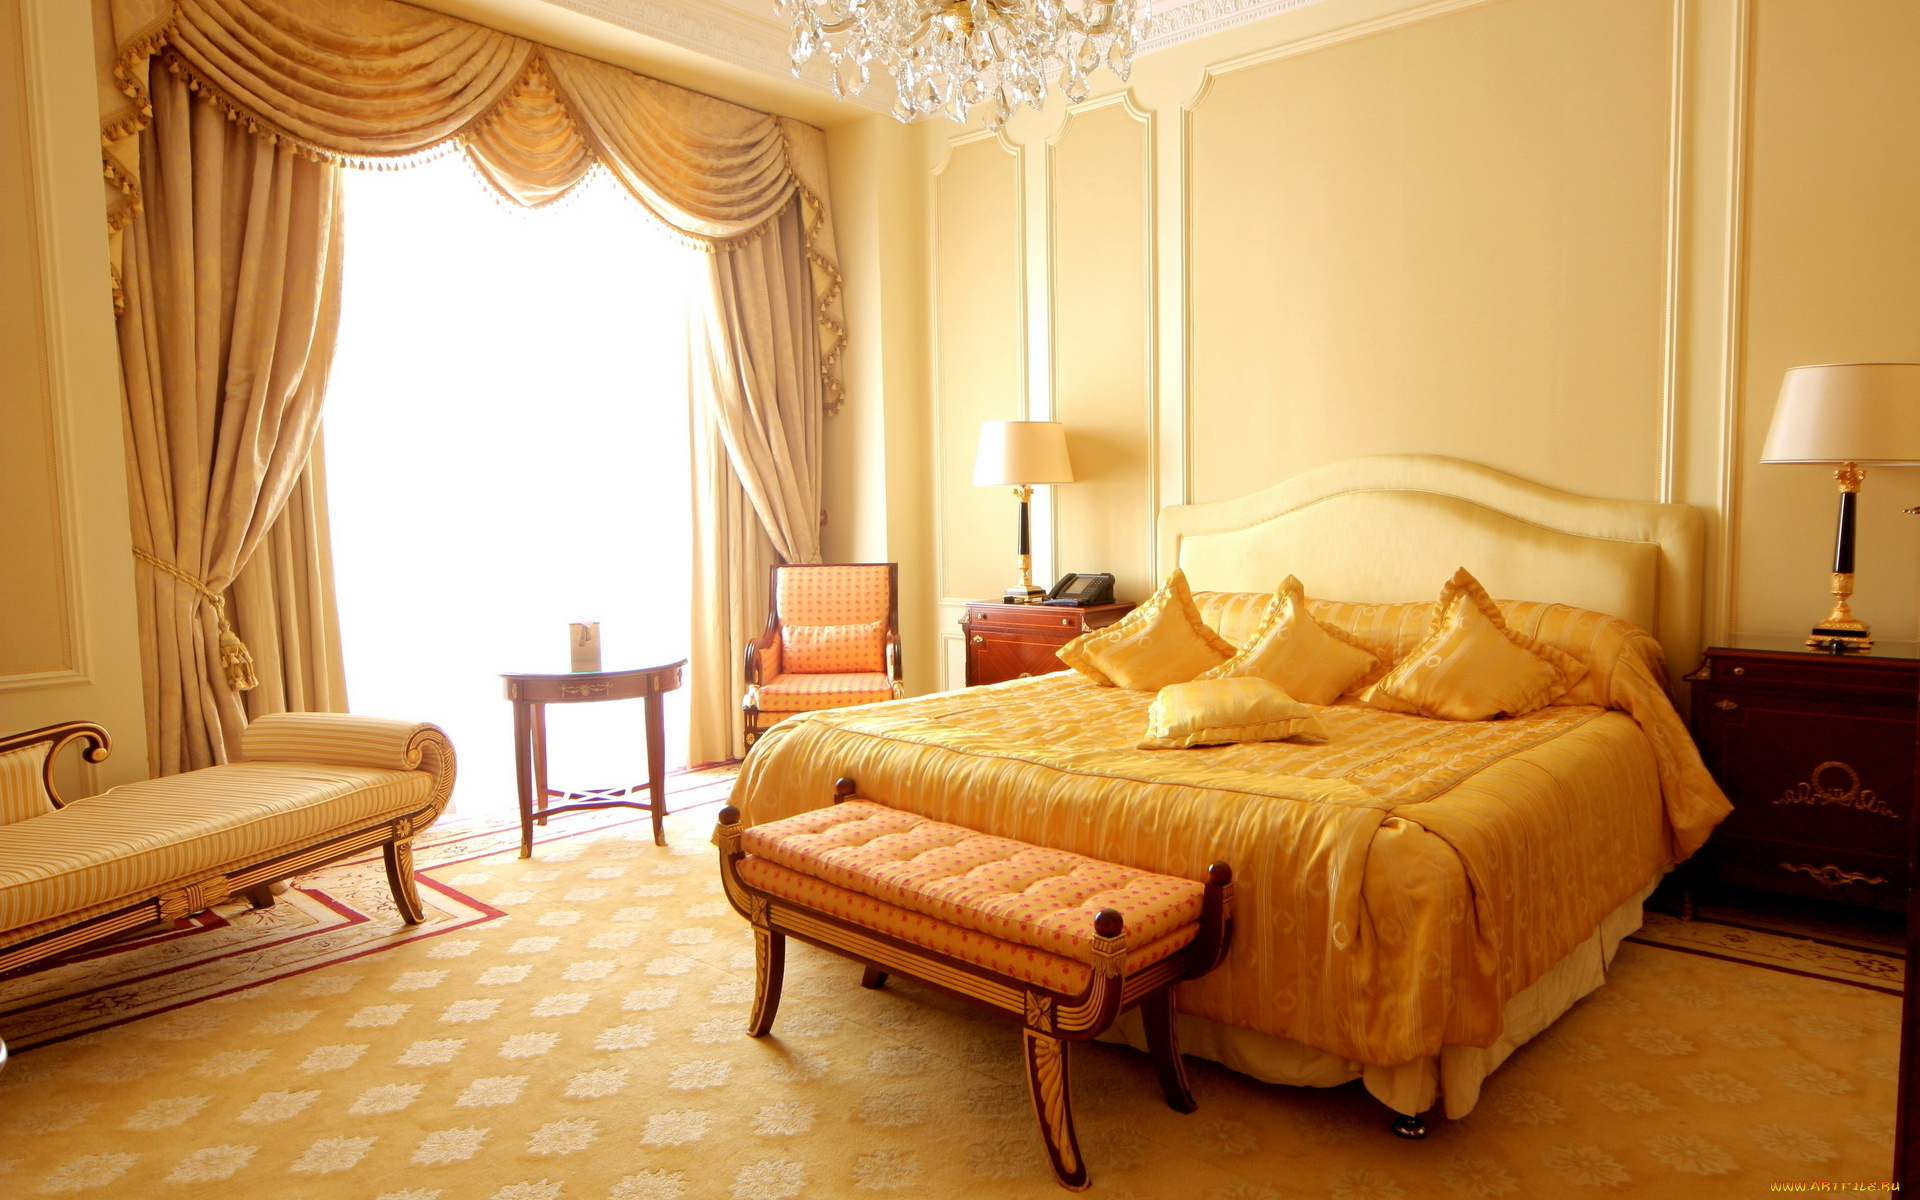 интерьер, спальня, стиль, дизайн, квартира, подушки, комната, кровать, кресло, диван, занавеска, лампа, желтое